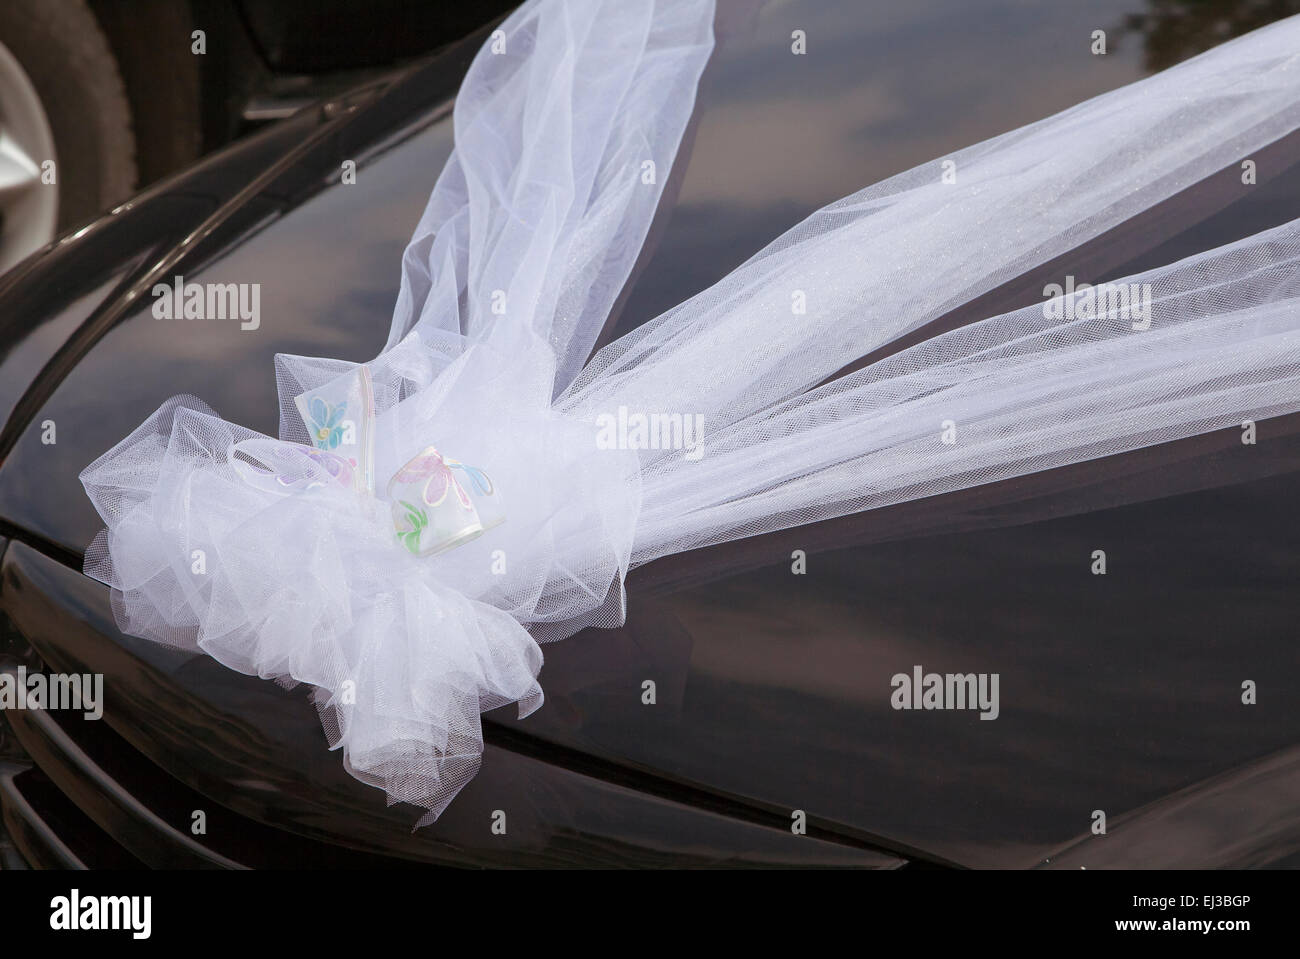 Hochzeits-Auto Mit Band-Dekoration Stockfoto - Bild von rosa